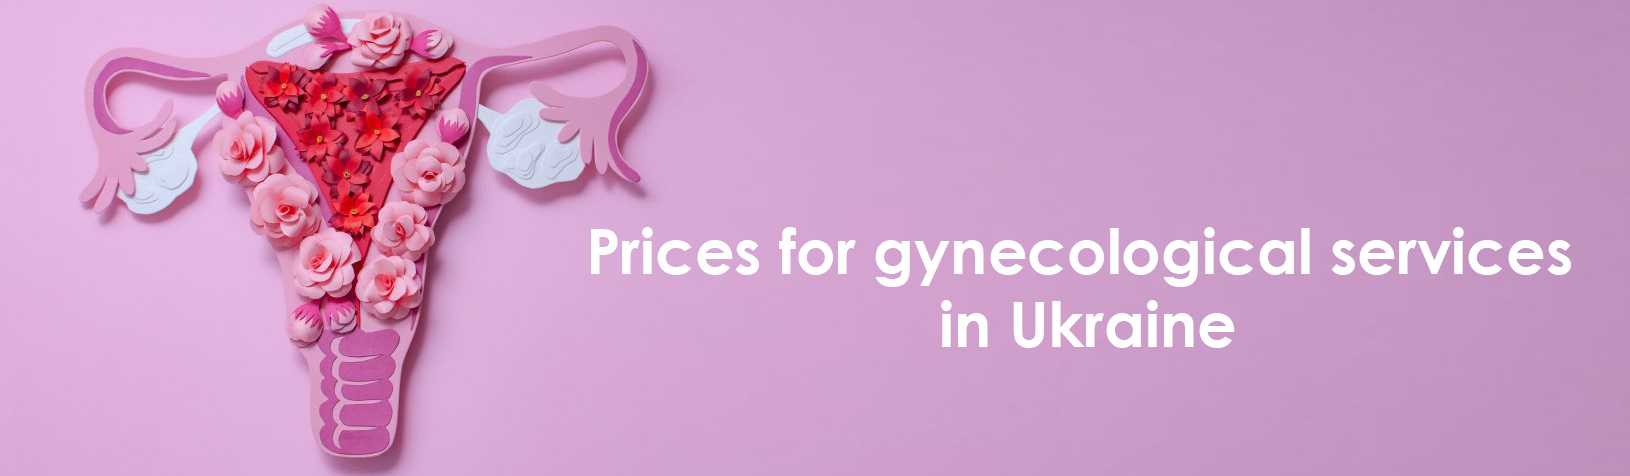 Цены на гинекологические услуги в Украине